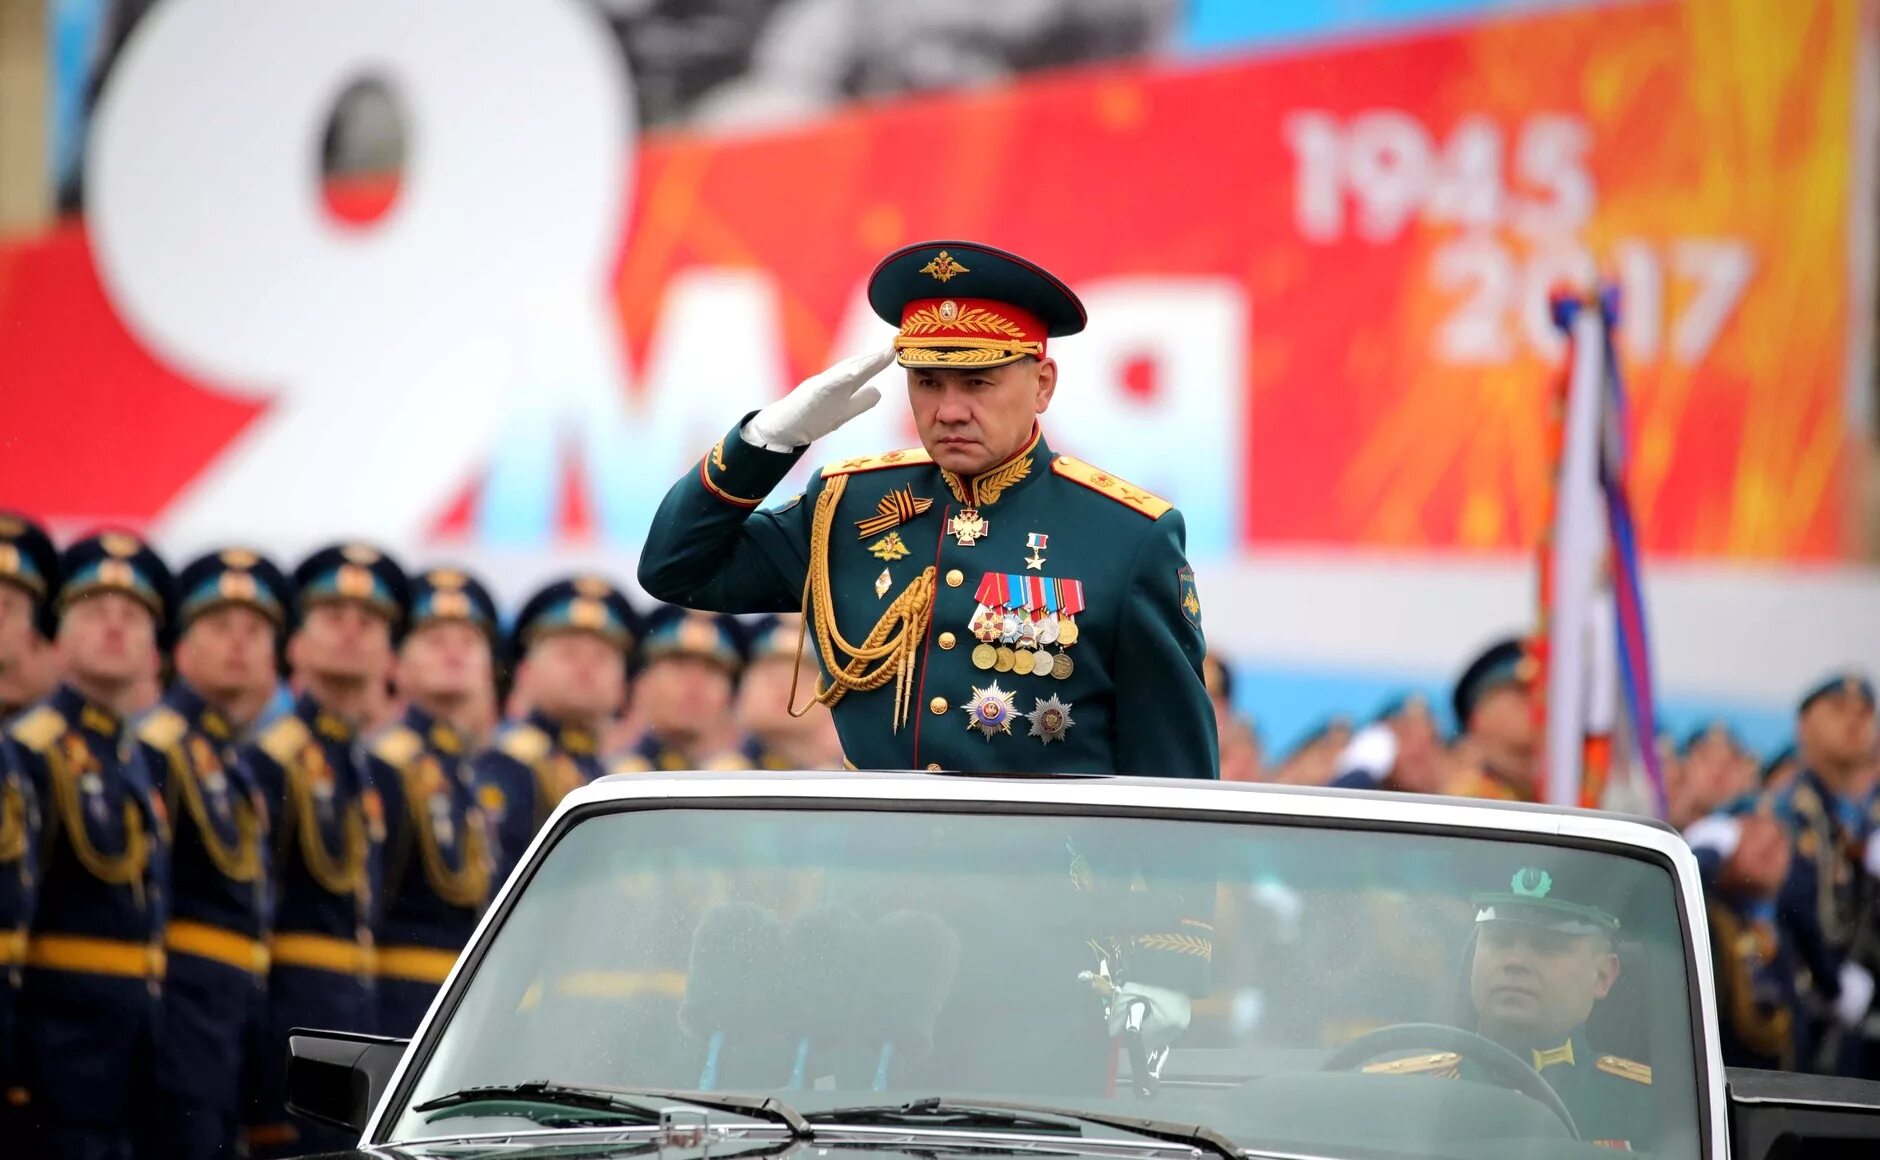 5 май 2017. Министр обороны Шойгу на параде. Генерал армии Шойгу 9 мая.